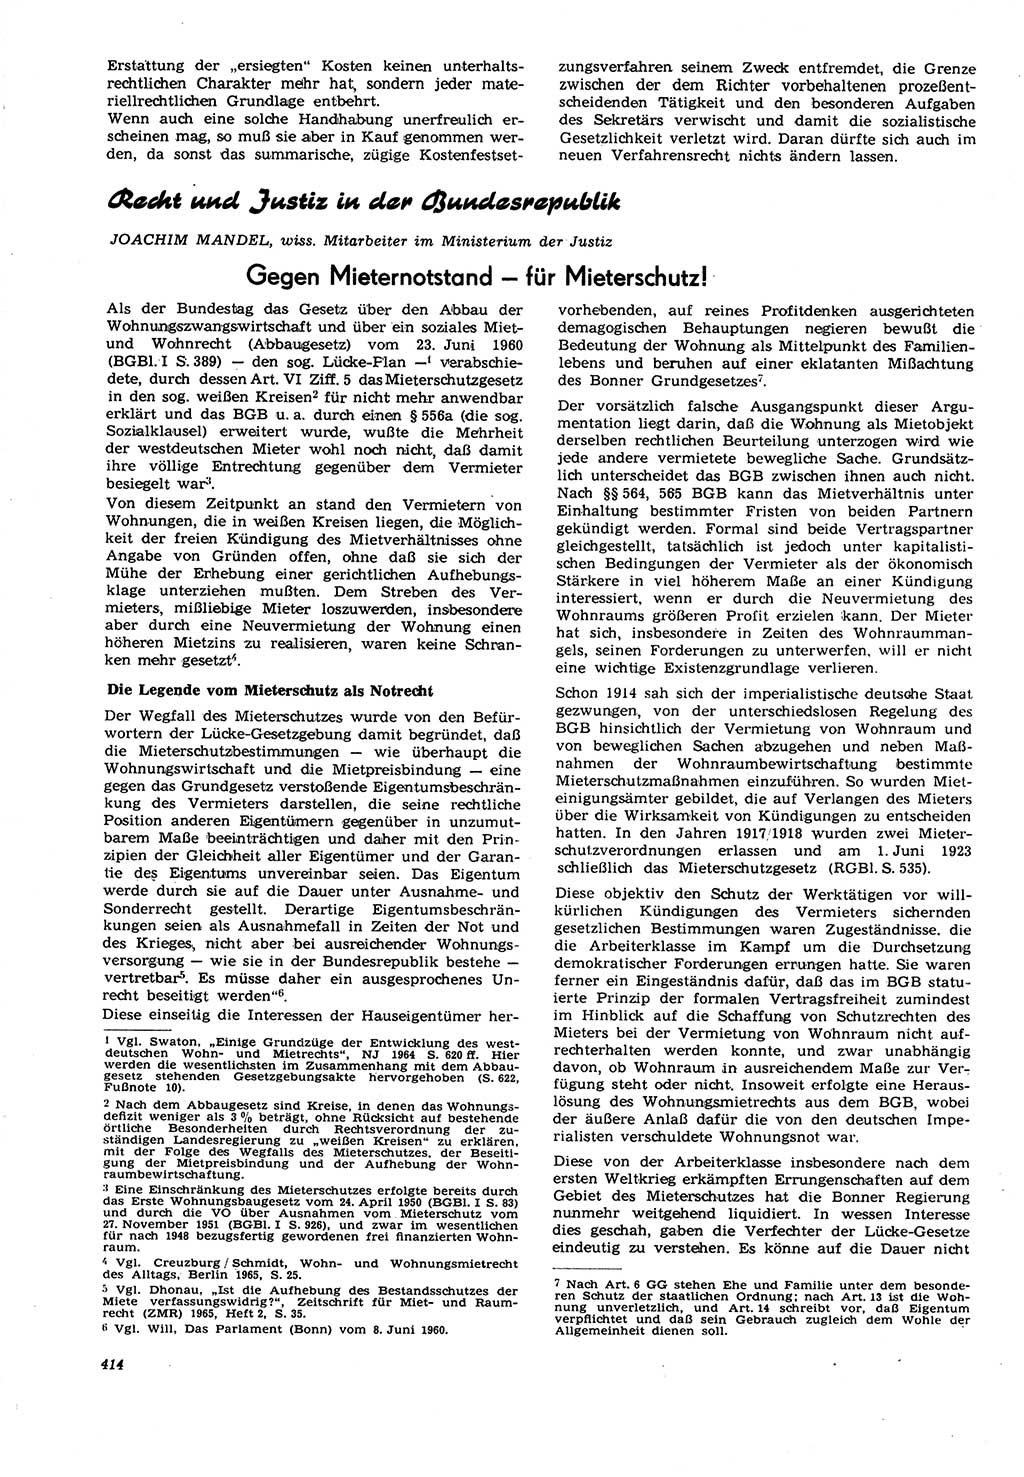 Neue Justiz (NJ), Zeitschrift für Recht und Rechtswissenschaft [Deutsche Demokratische Republik (DDR)], 21. Jahrgang 1967, Seite 414 (NJ DDR 1967, S. 414)